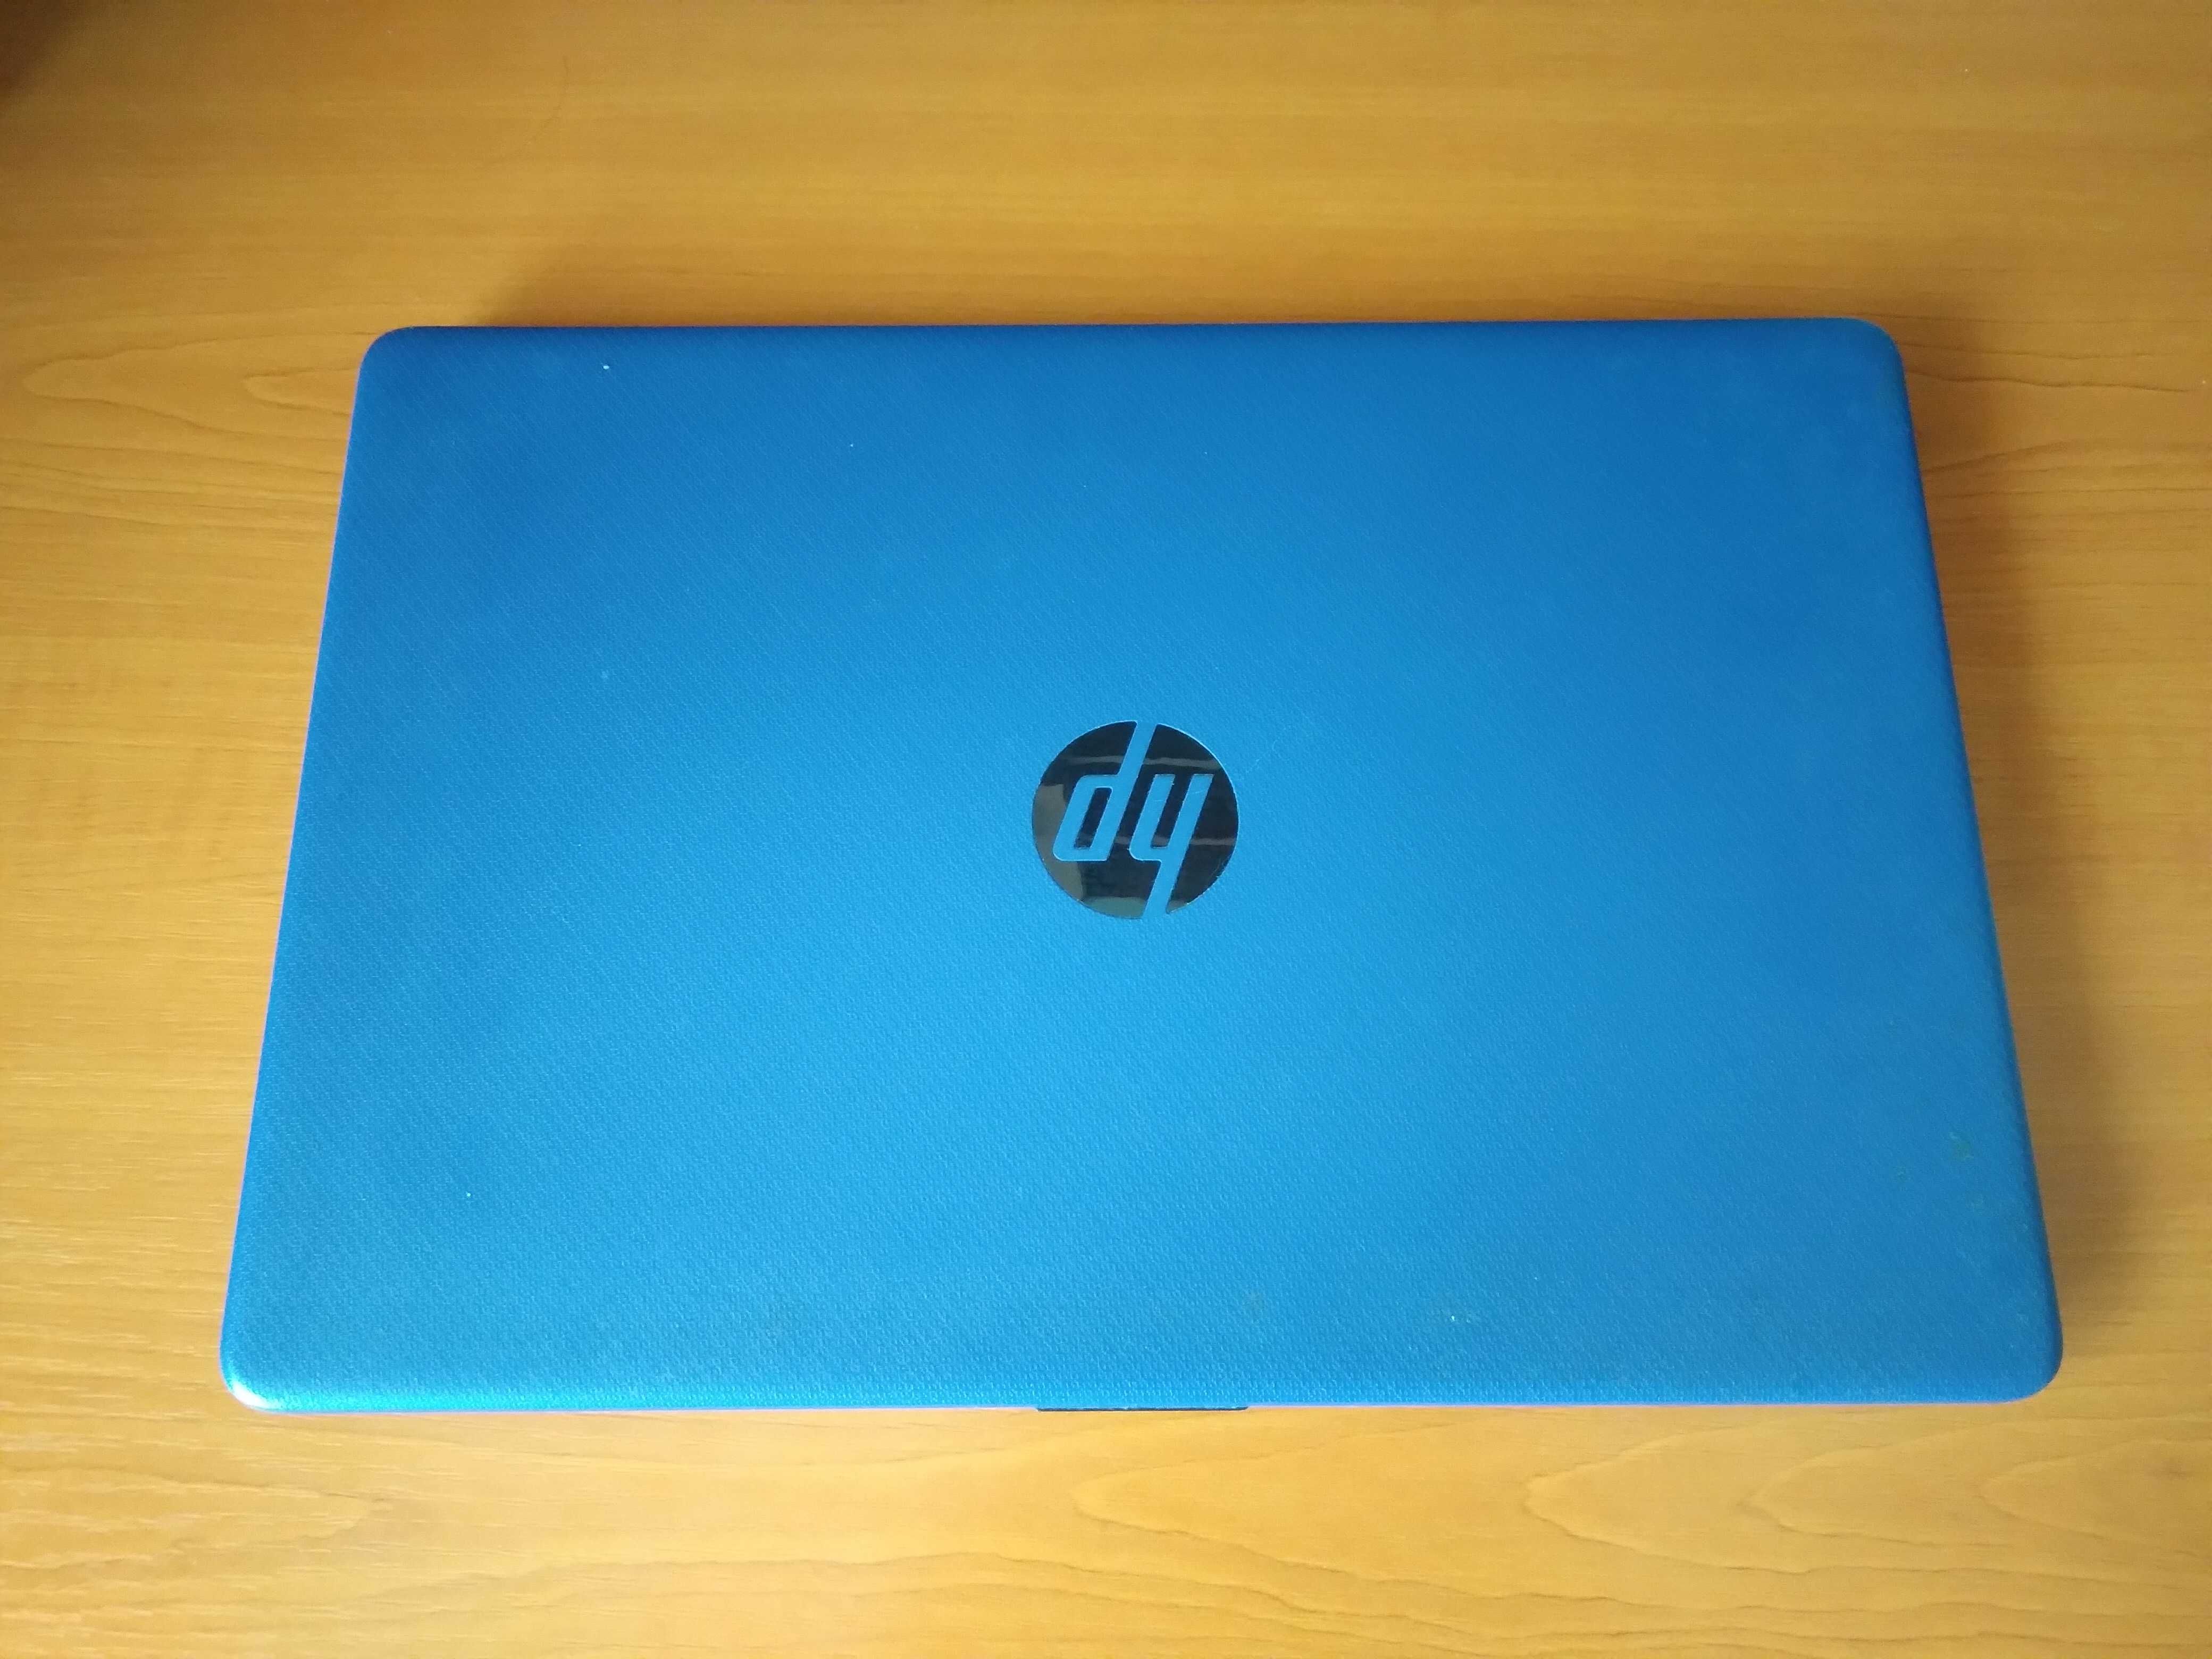 Vând laptop HP, vechime aproximativ 2 ani, nefolosit in mare parte.